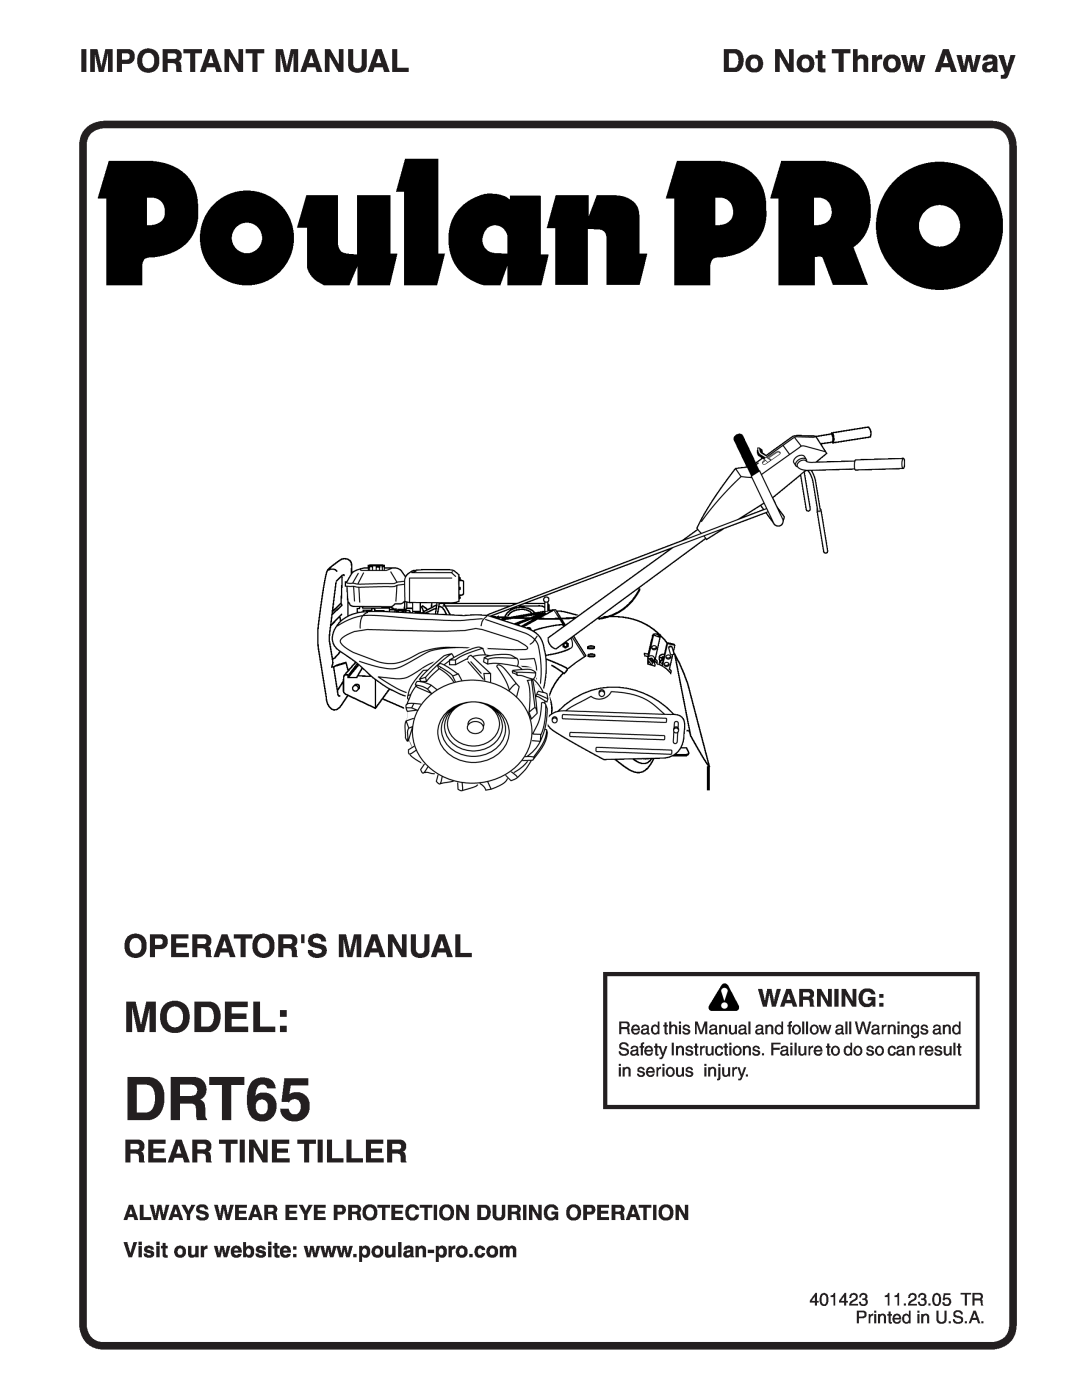 Poulan DRT65 manual Model, Important Manual, Operators Manual, Rear Tine Tiller, Do Not Throw Away 